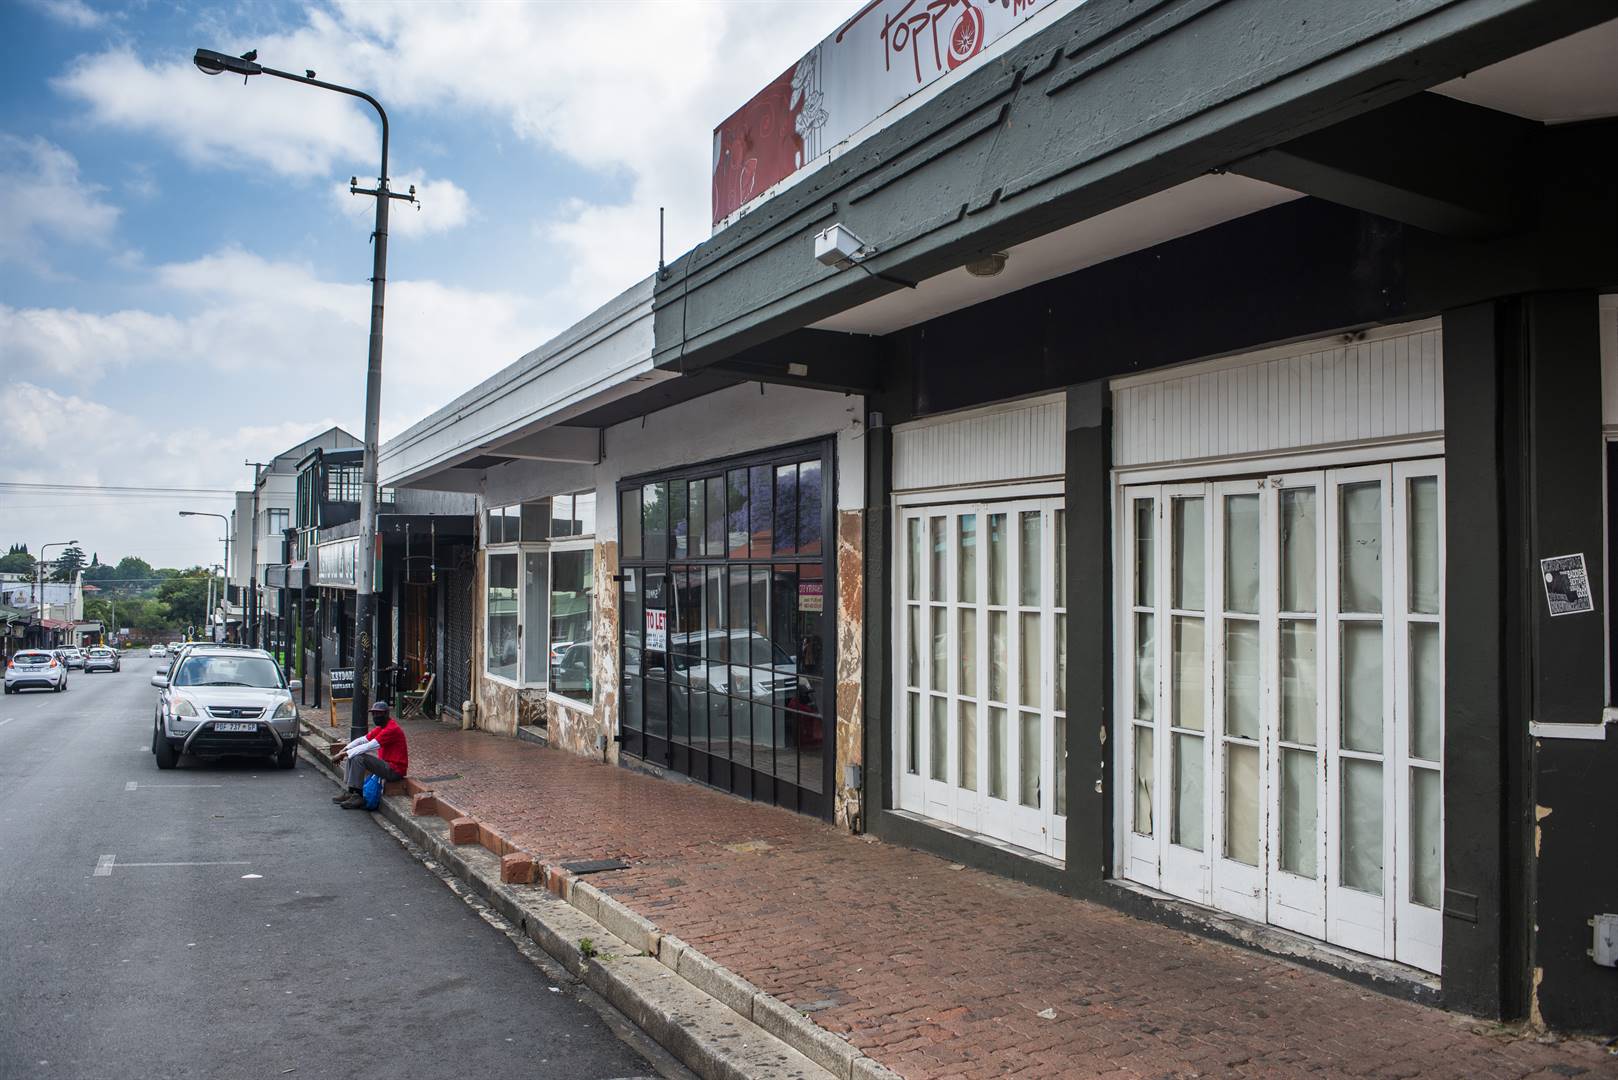 Verskeie ondernemings in 7de Straat in Melville, Johannesburg, is weens die staat van inperking gesluit. Foto: Getty Images